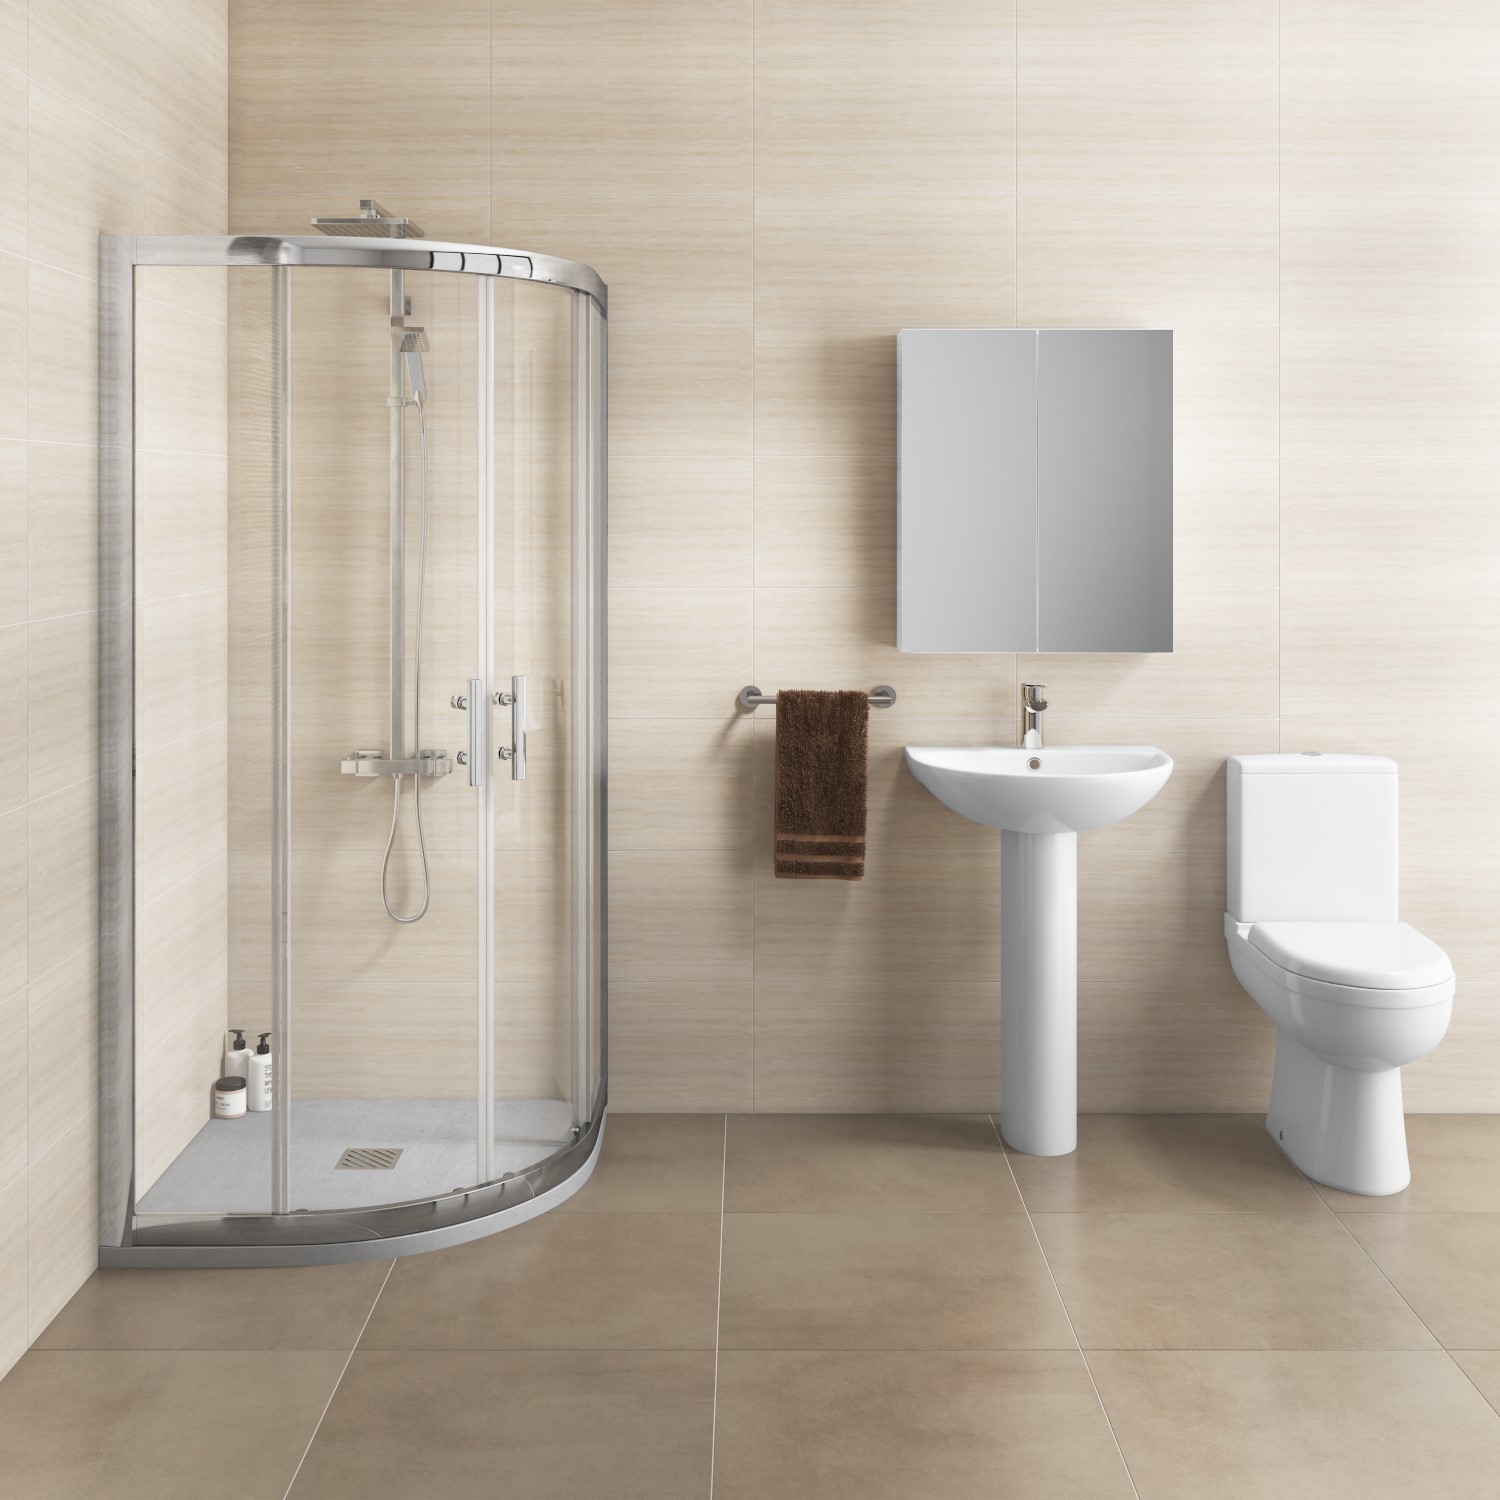 800 x 800 Shower Enclosure Bathroom Suite Close Coupled Toilet & Basin Sink Set 